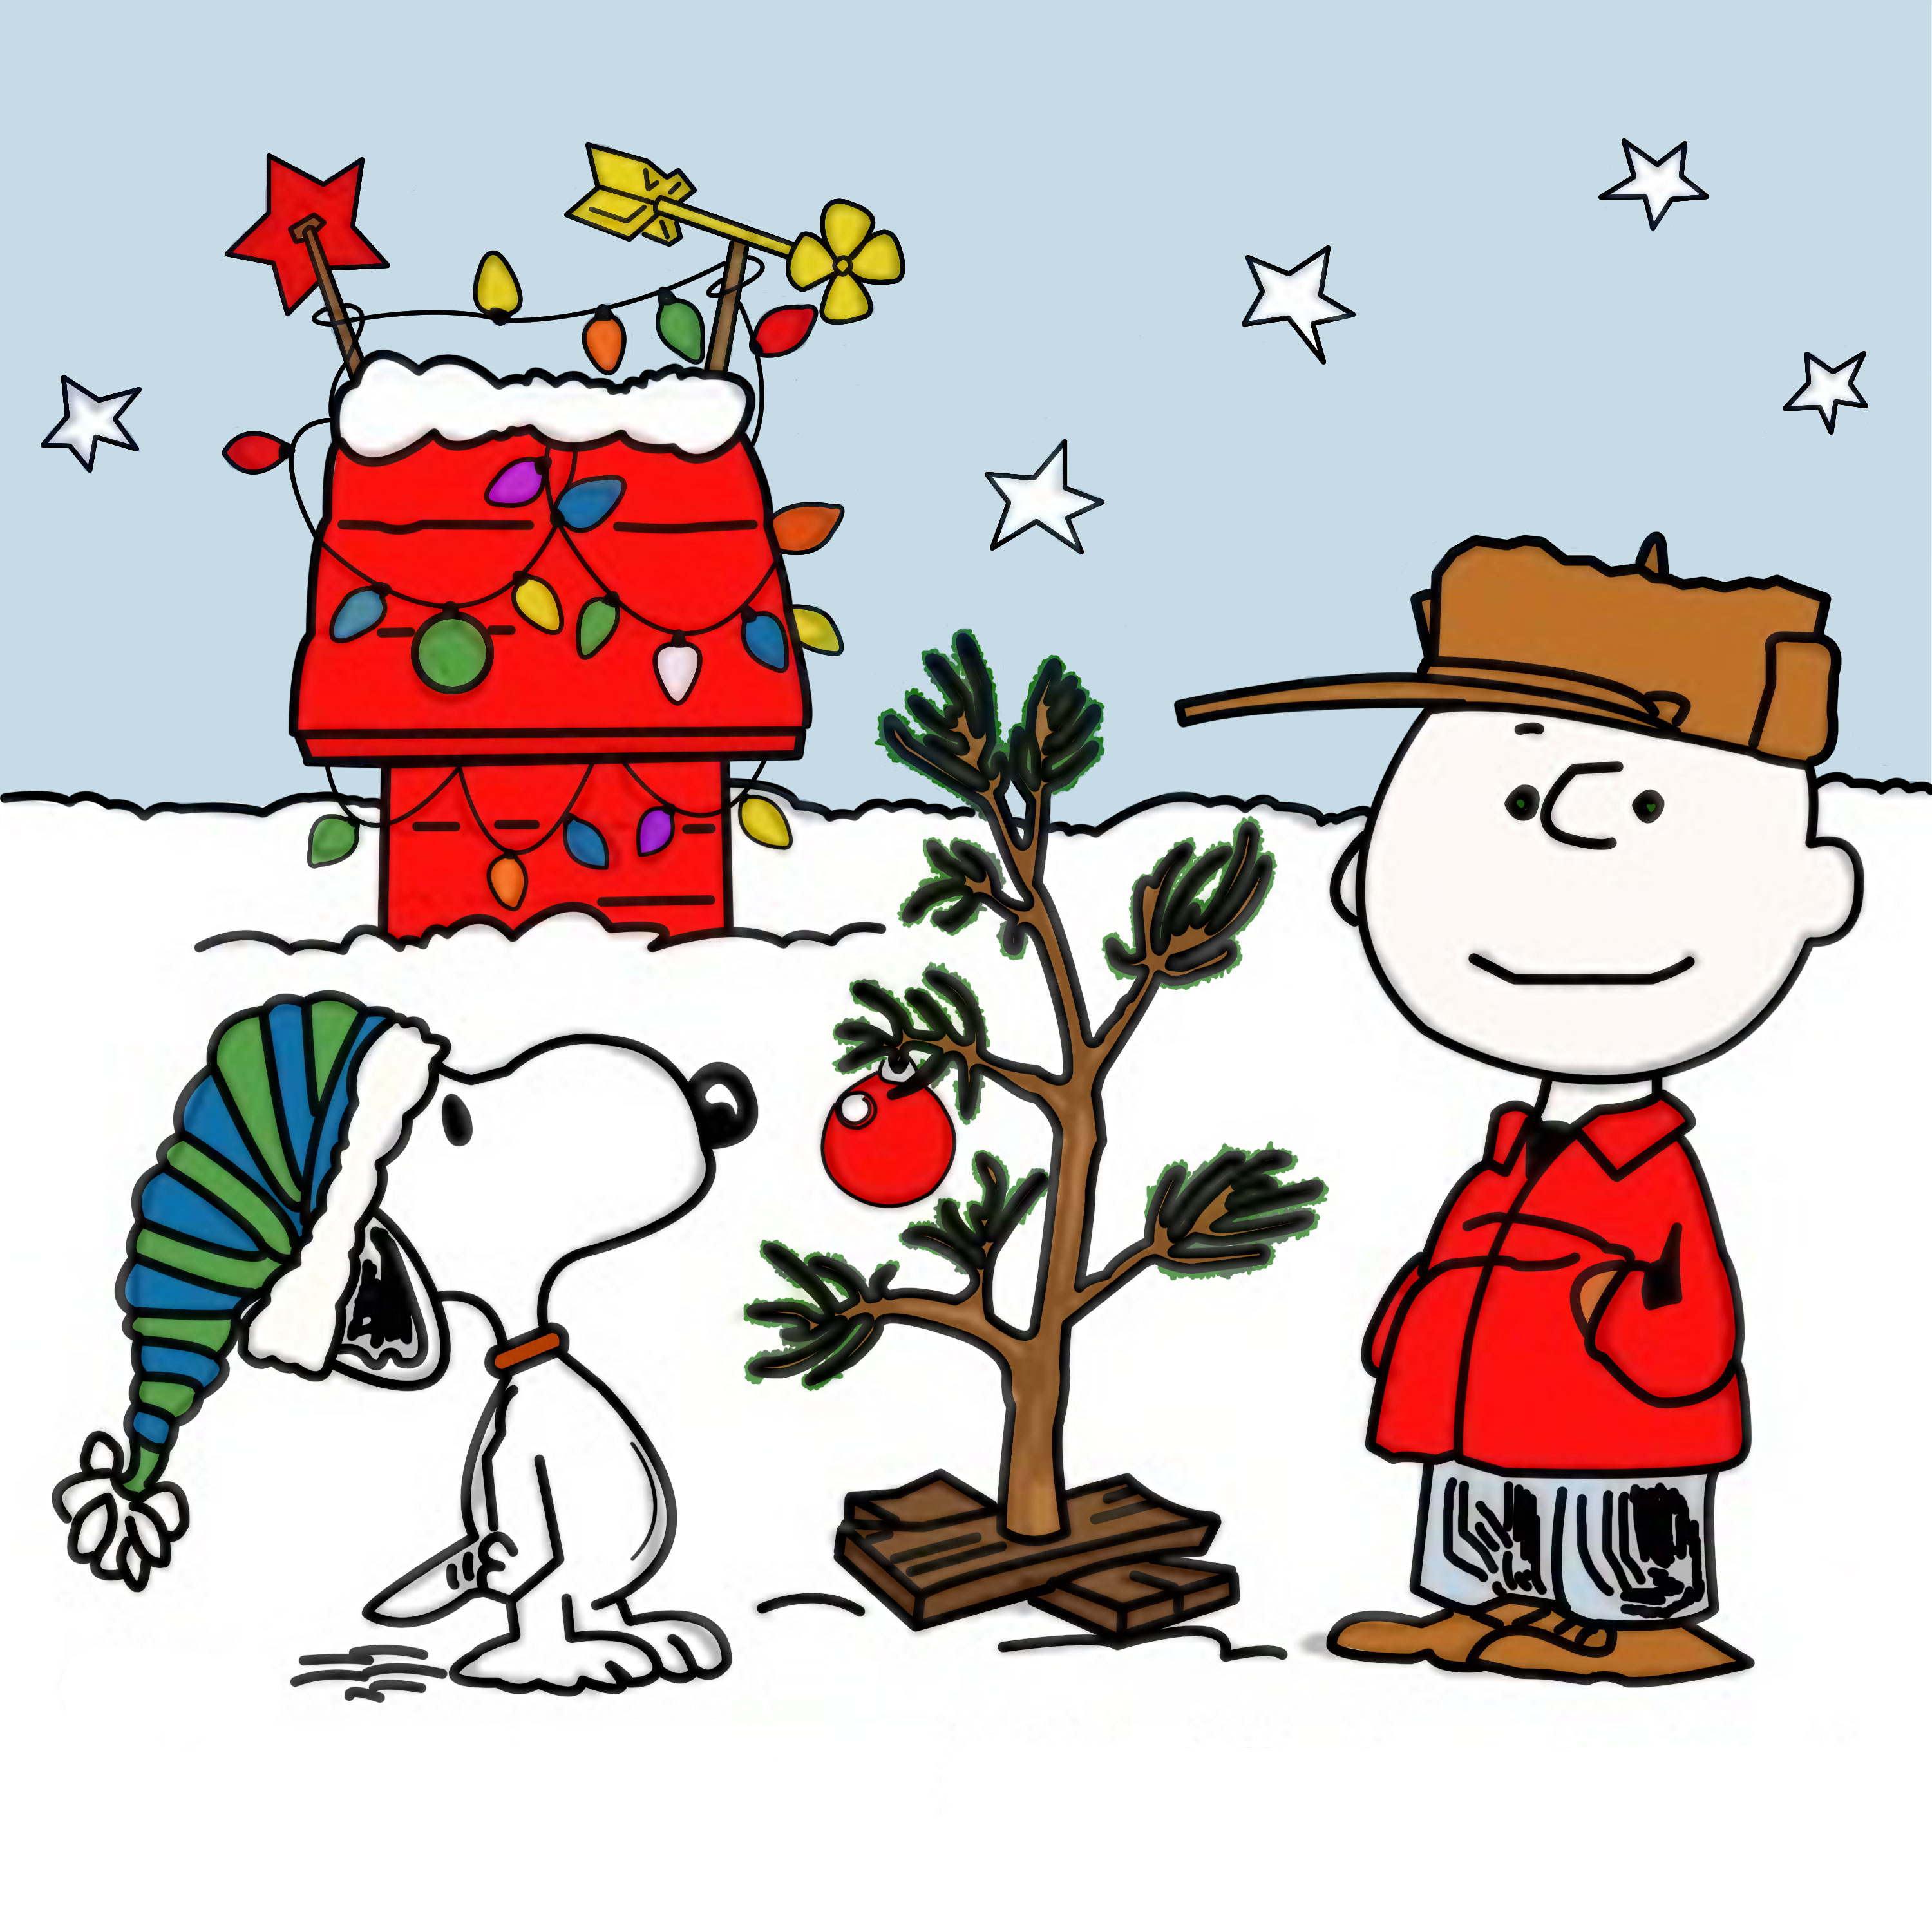 A Charlie Brown Christmas #7